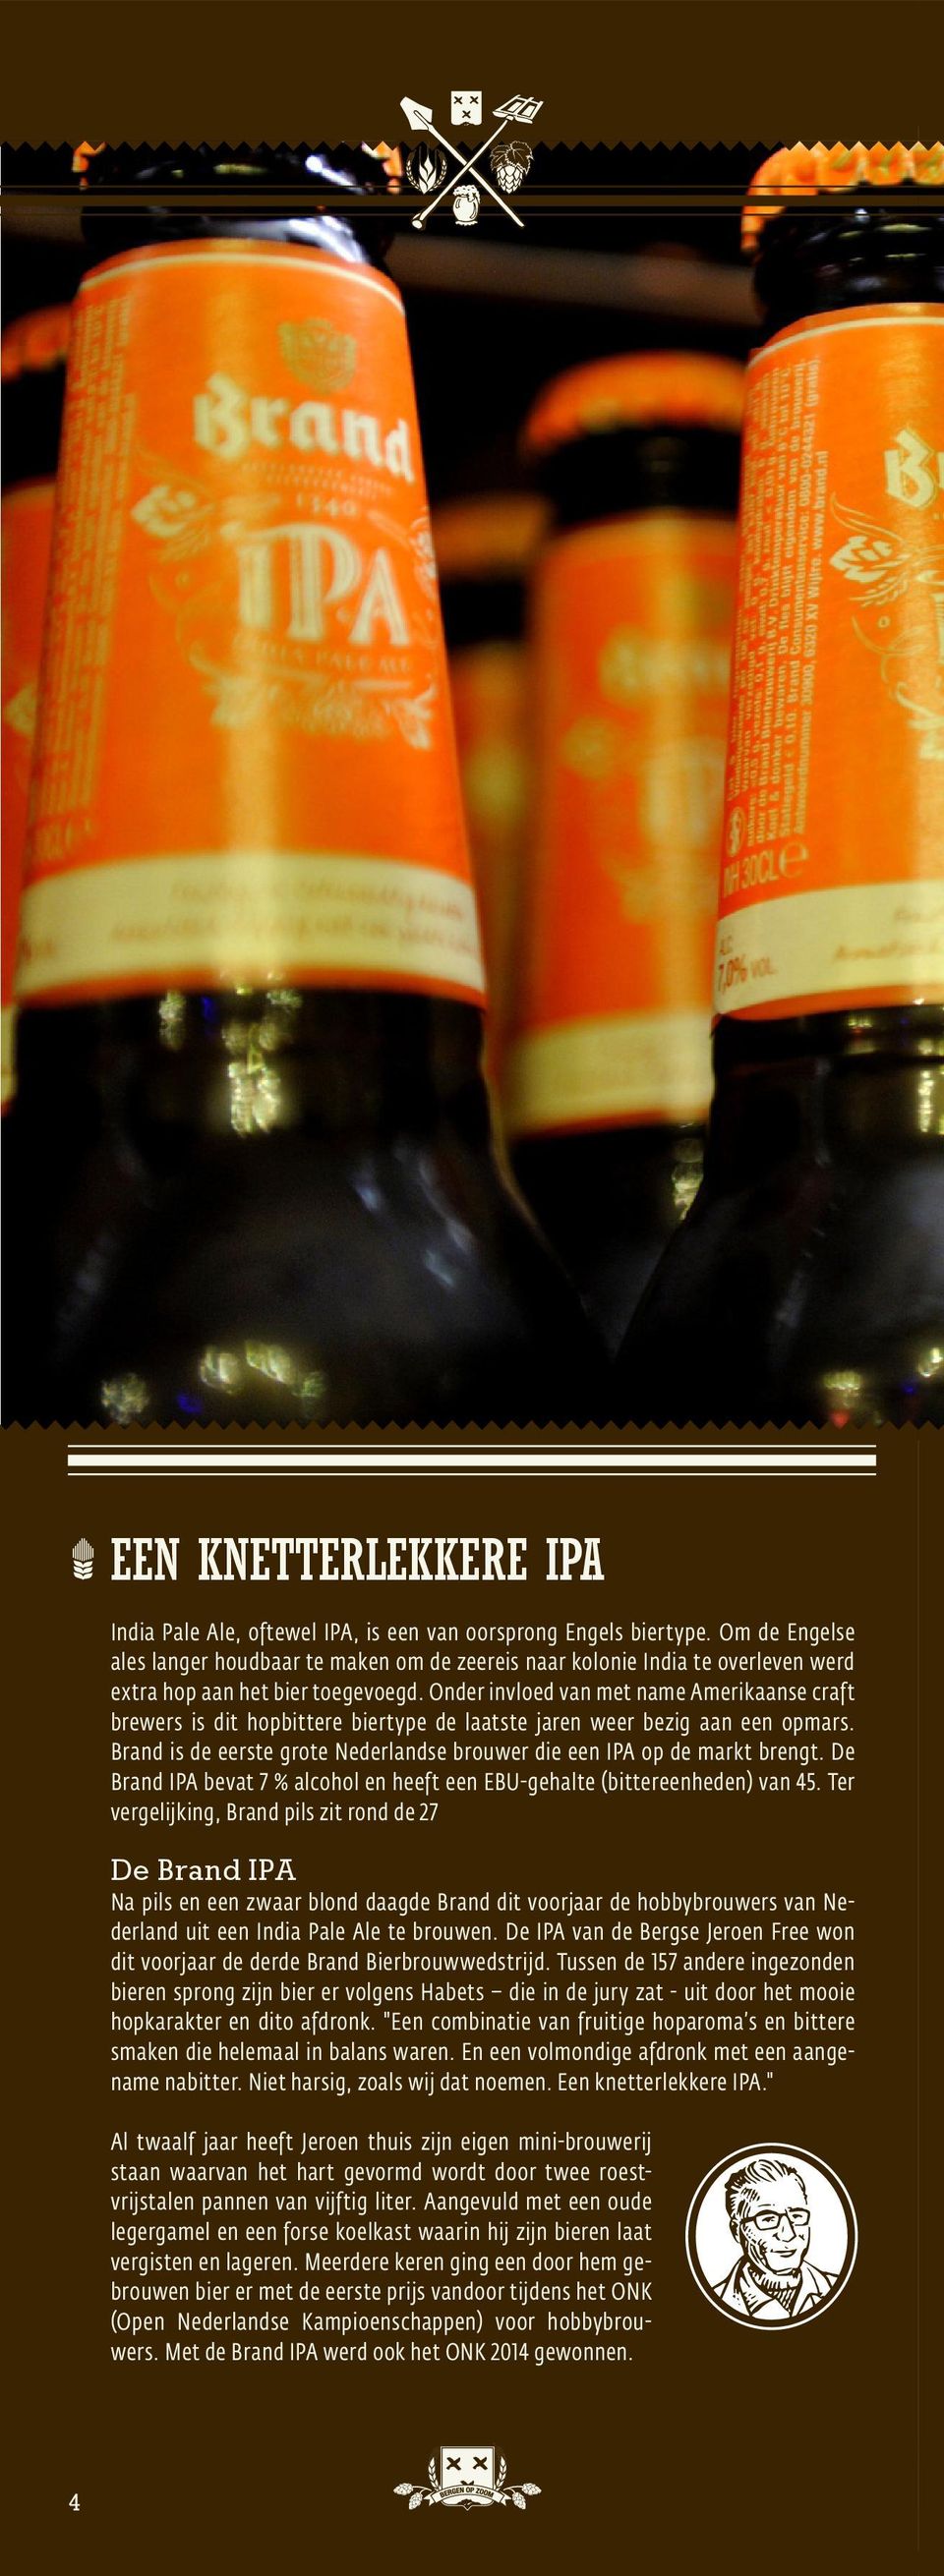 Onder invloed van met name Amerikaanse craft brewers is dit hopbittere biertype de laatste jaren weer bezig aan een opmars. Brand is de eerste grote Nederlandse brouwer die een IPA op de markt brengt.